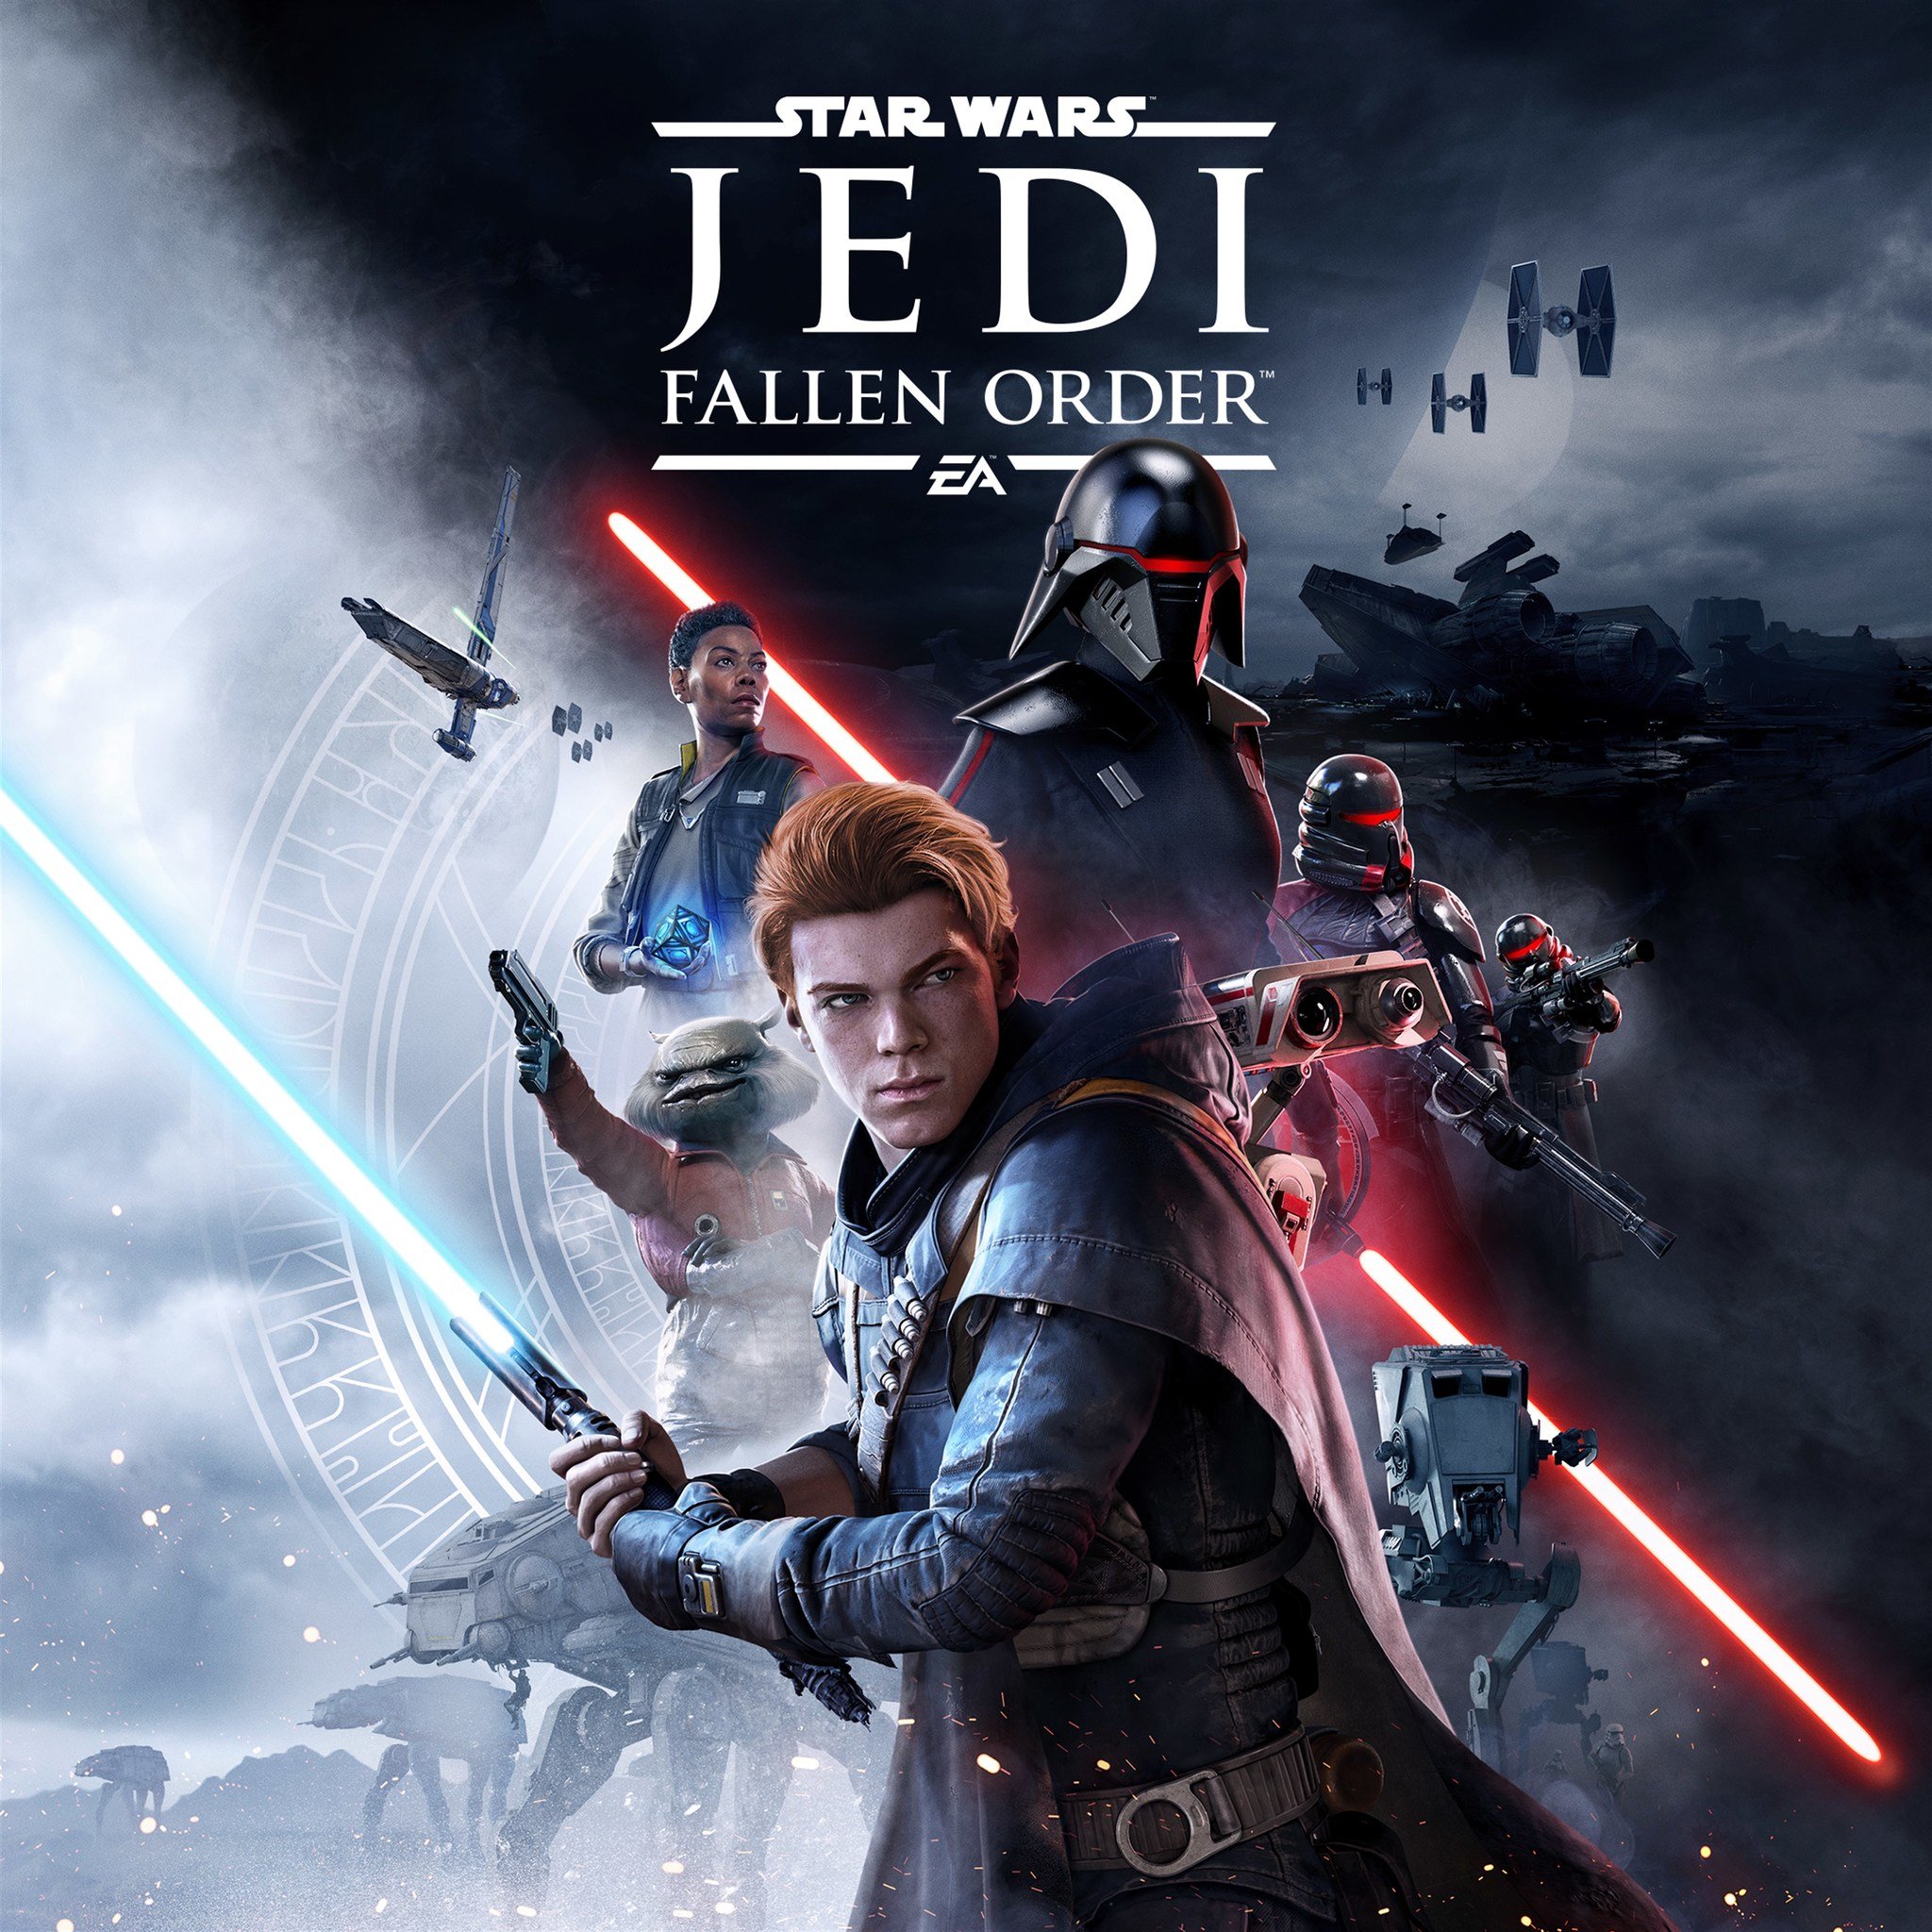 Star Wars Jedi Fallen Order Square Reco Image